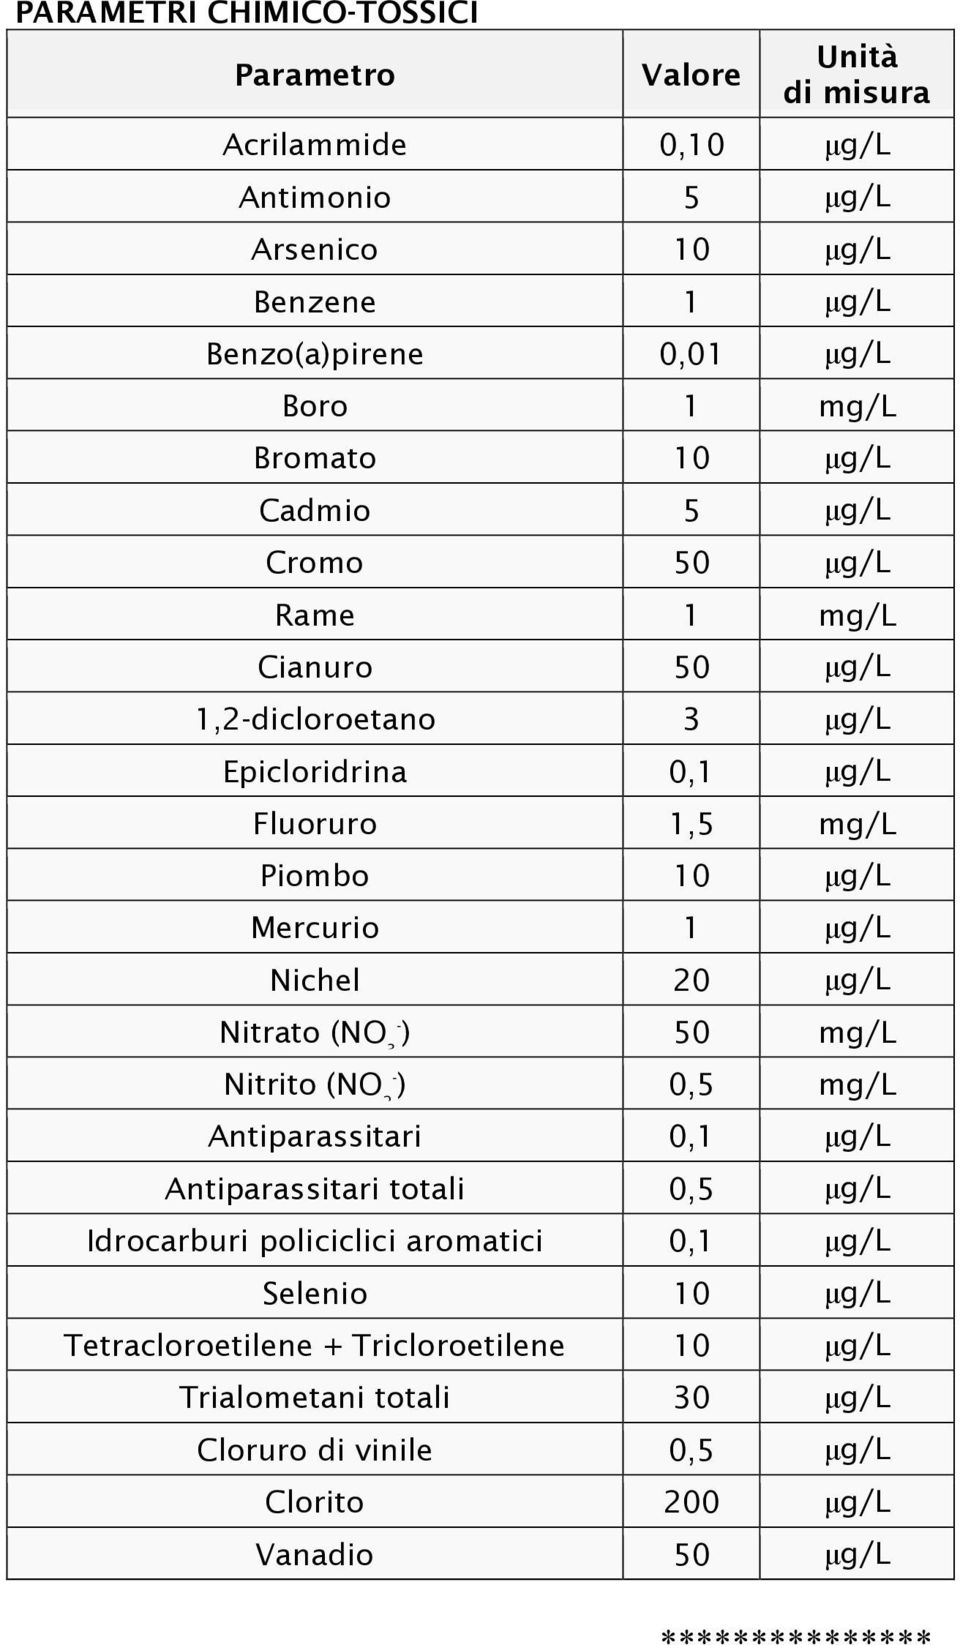 1 µg/l Nichel 20 µg/l Nitrato (NO 3- ) 50 mg/l Nitrito (NO 2- ) 0,5 mg/l Antiparassitari 0,1 µg/l Antiparassitari totali 0,5 µg/l Idrocarburi policiclici aromatici